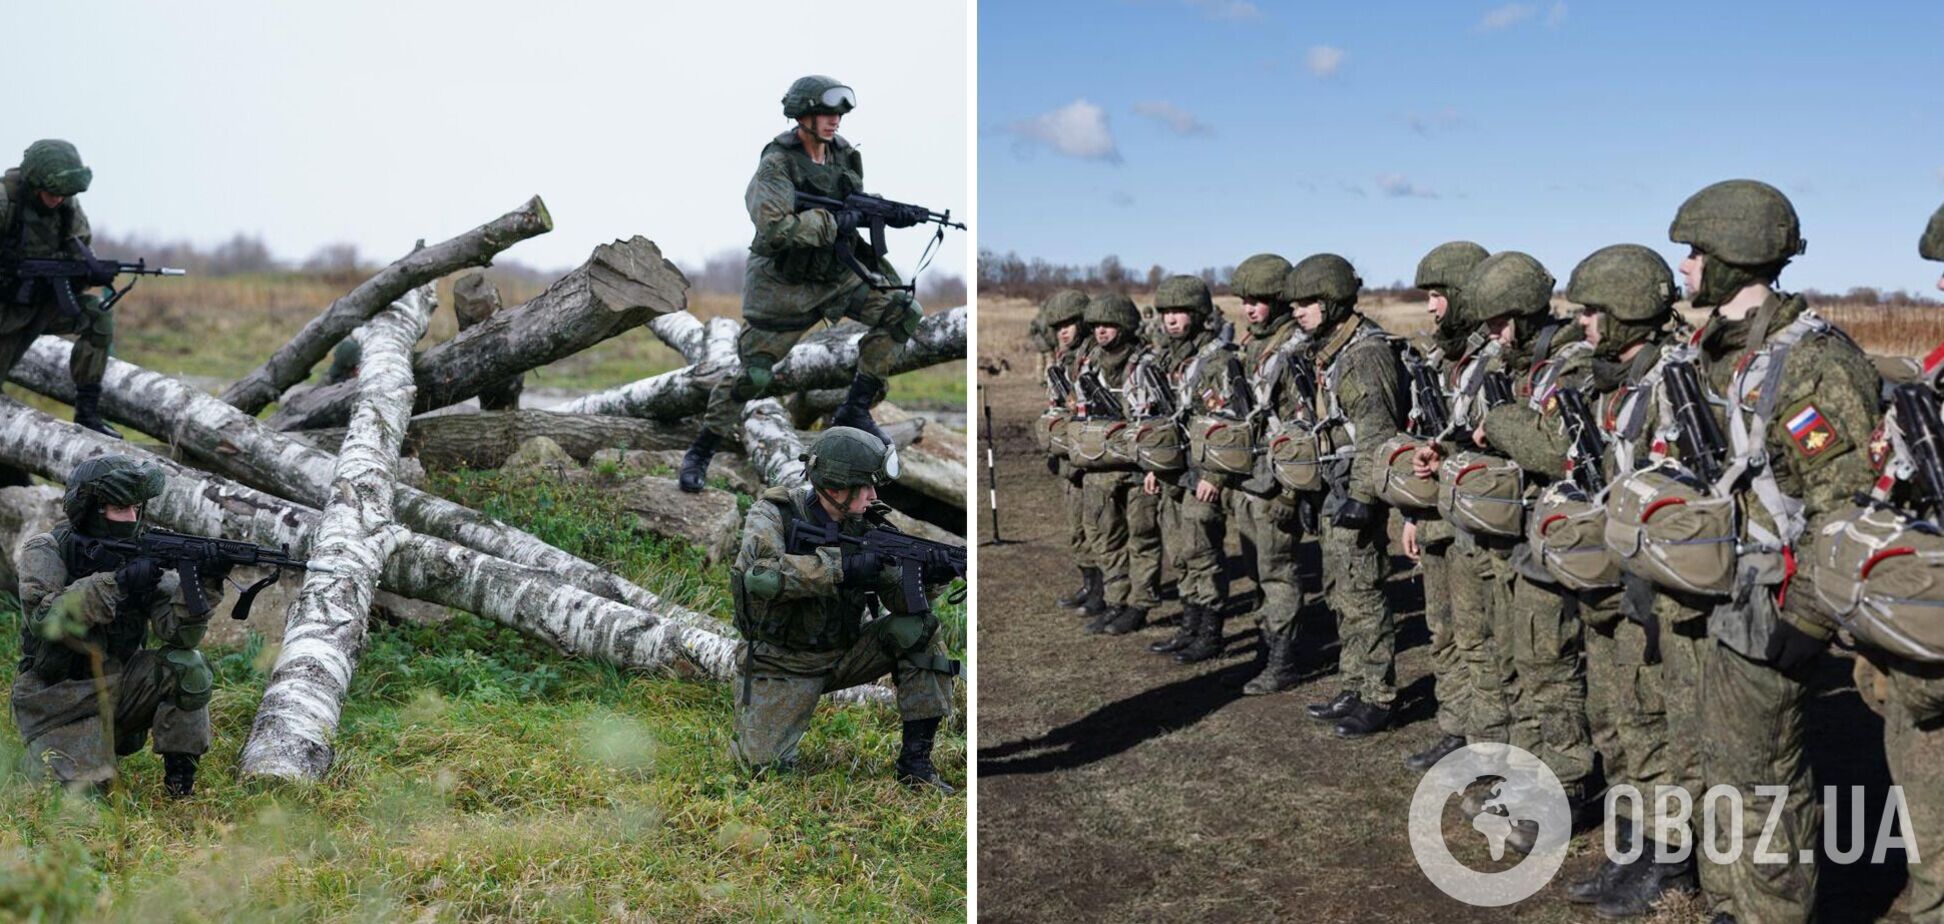 'Командувача армії усунули': окупант зізнався, що в армії РФ великі проблеми. Аудіо